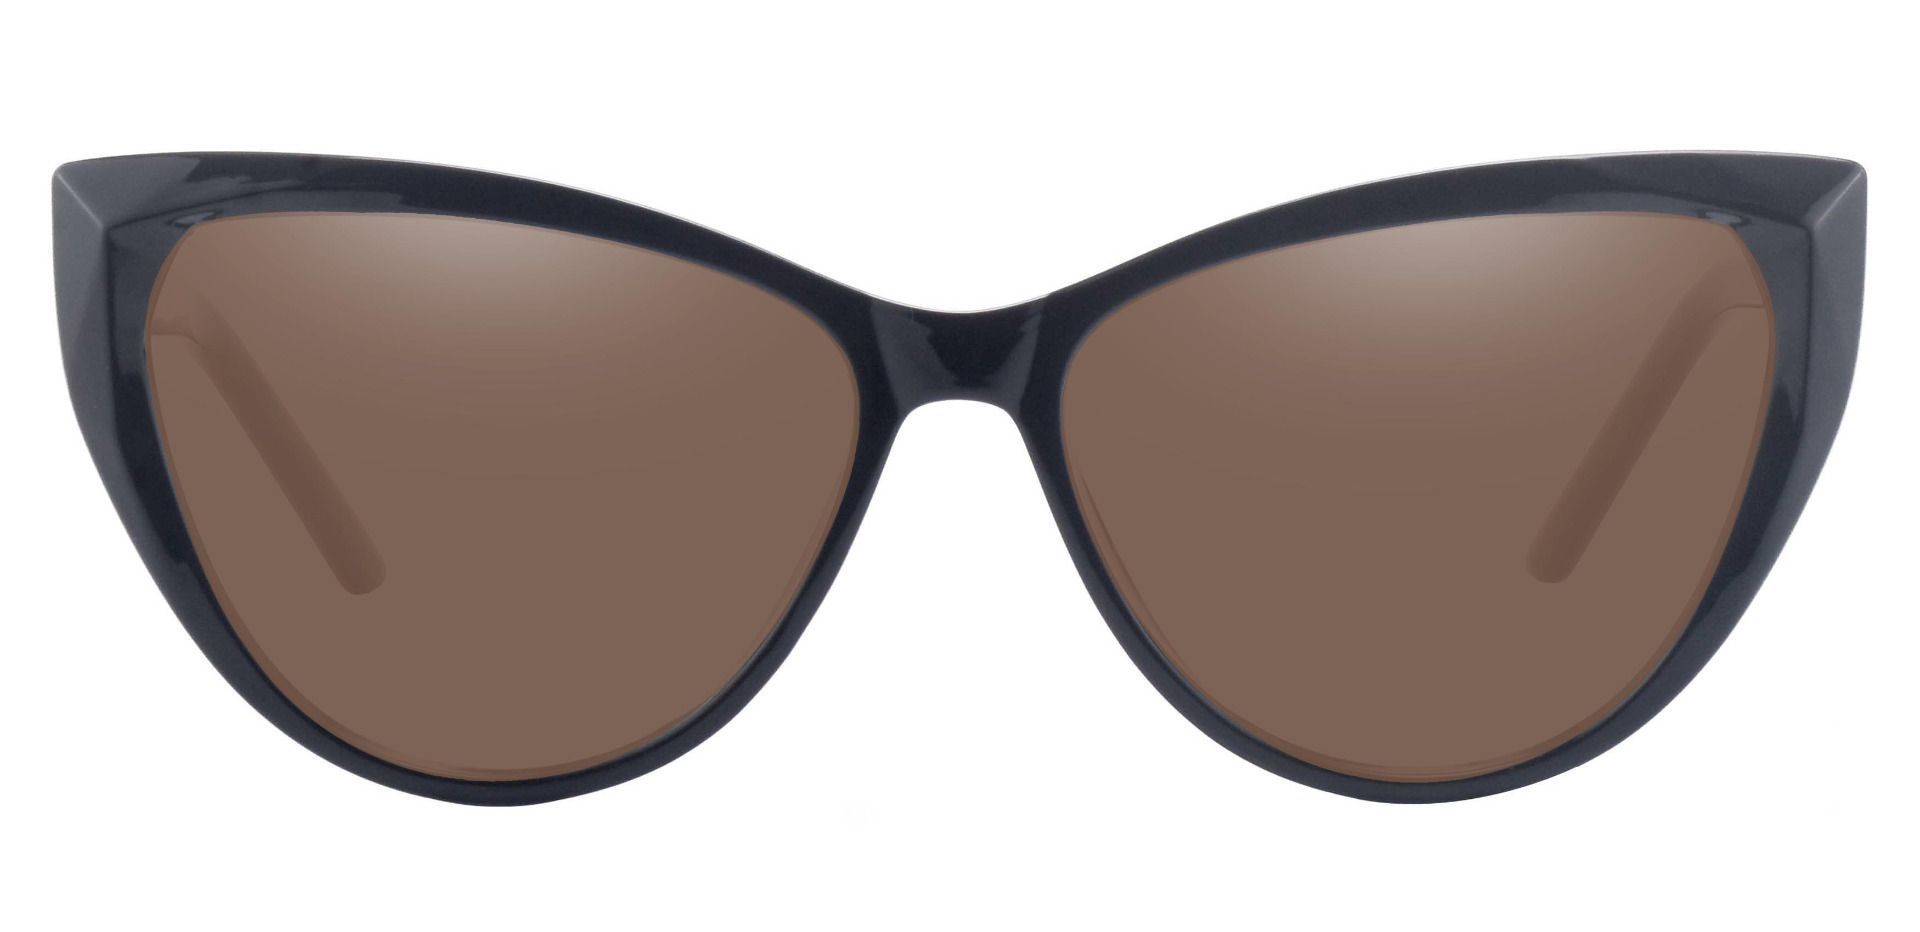 Ireland Cat Eye Progressive Sunglasses - Black Frame With Brown Lenses